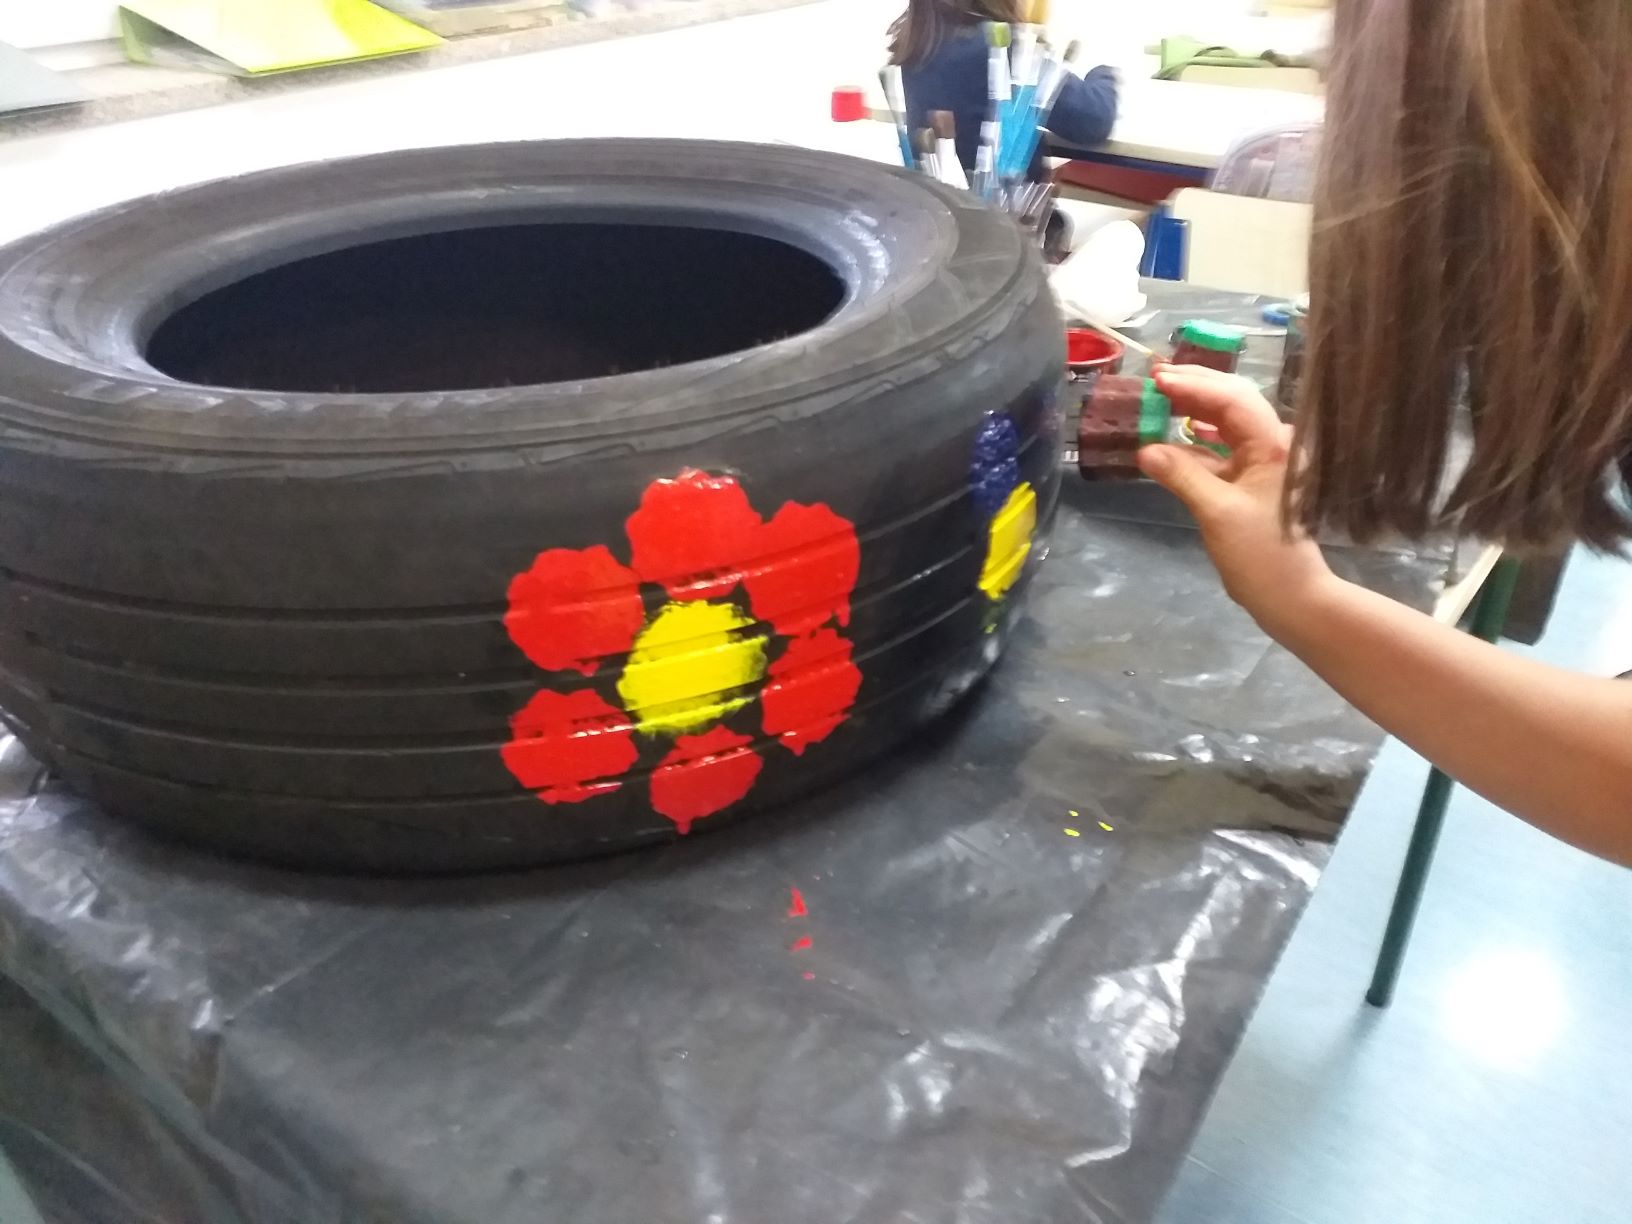 Estamos a decorar os pneus, para tornar a horta mais divertida.